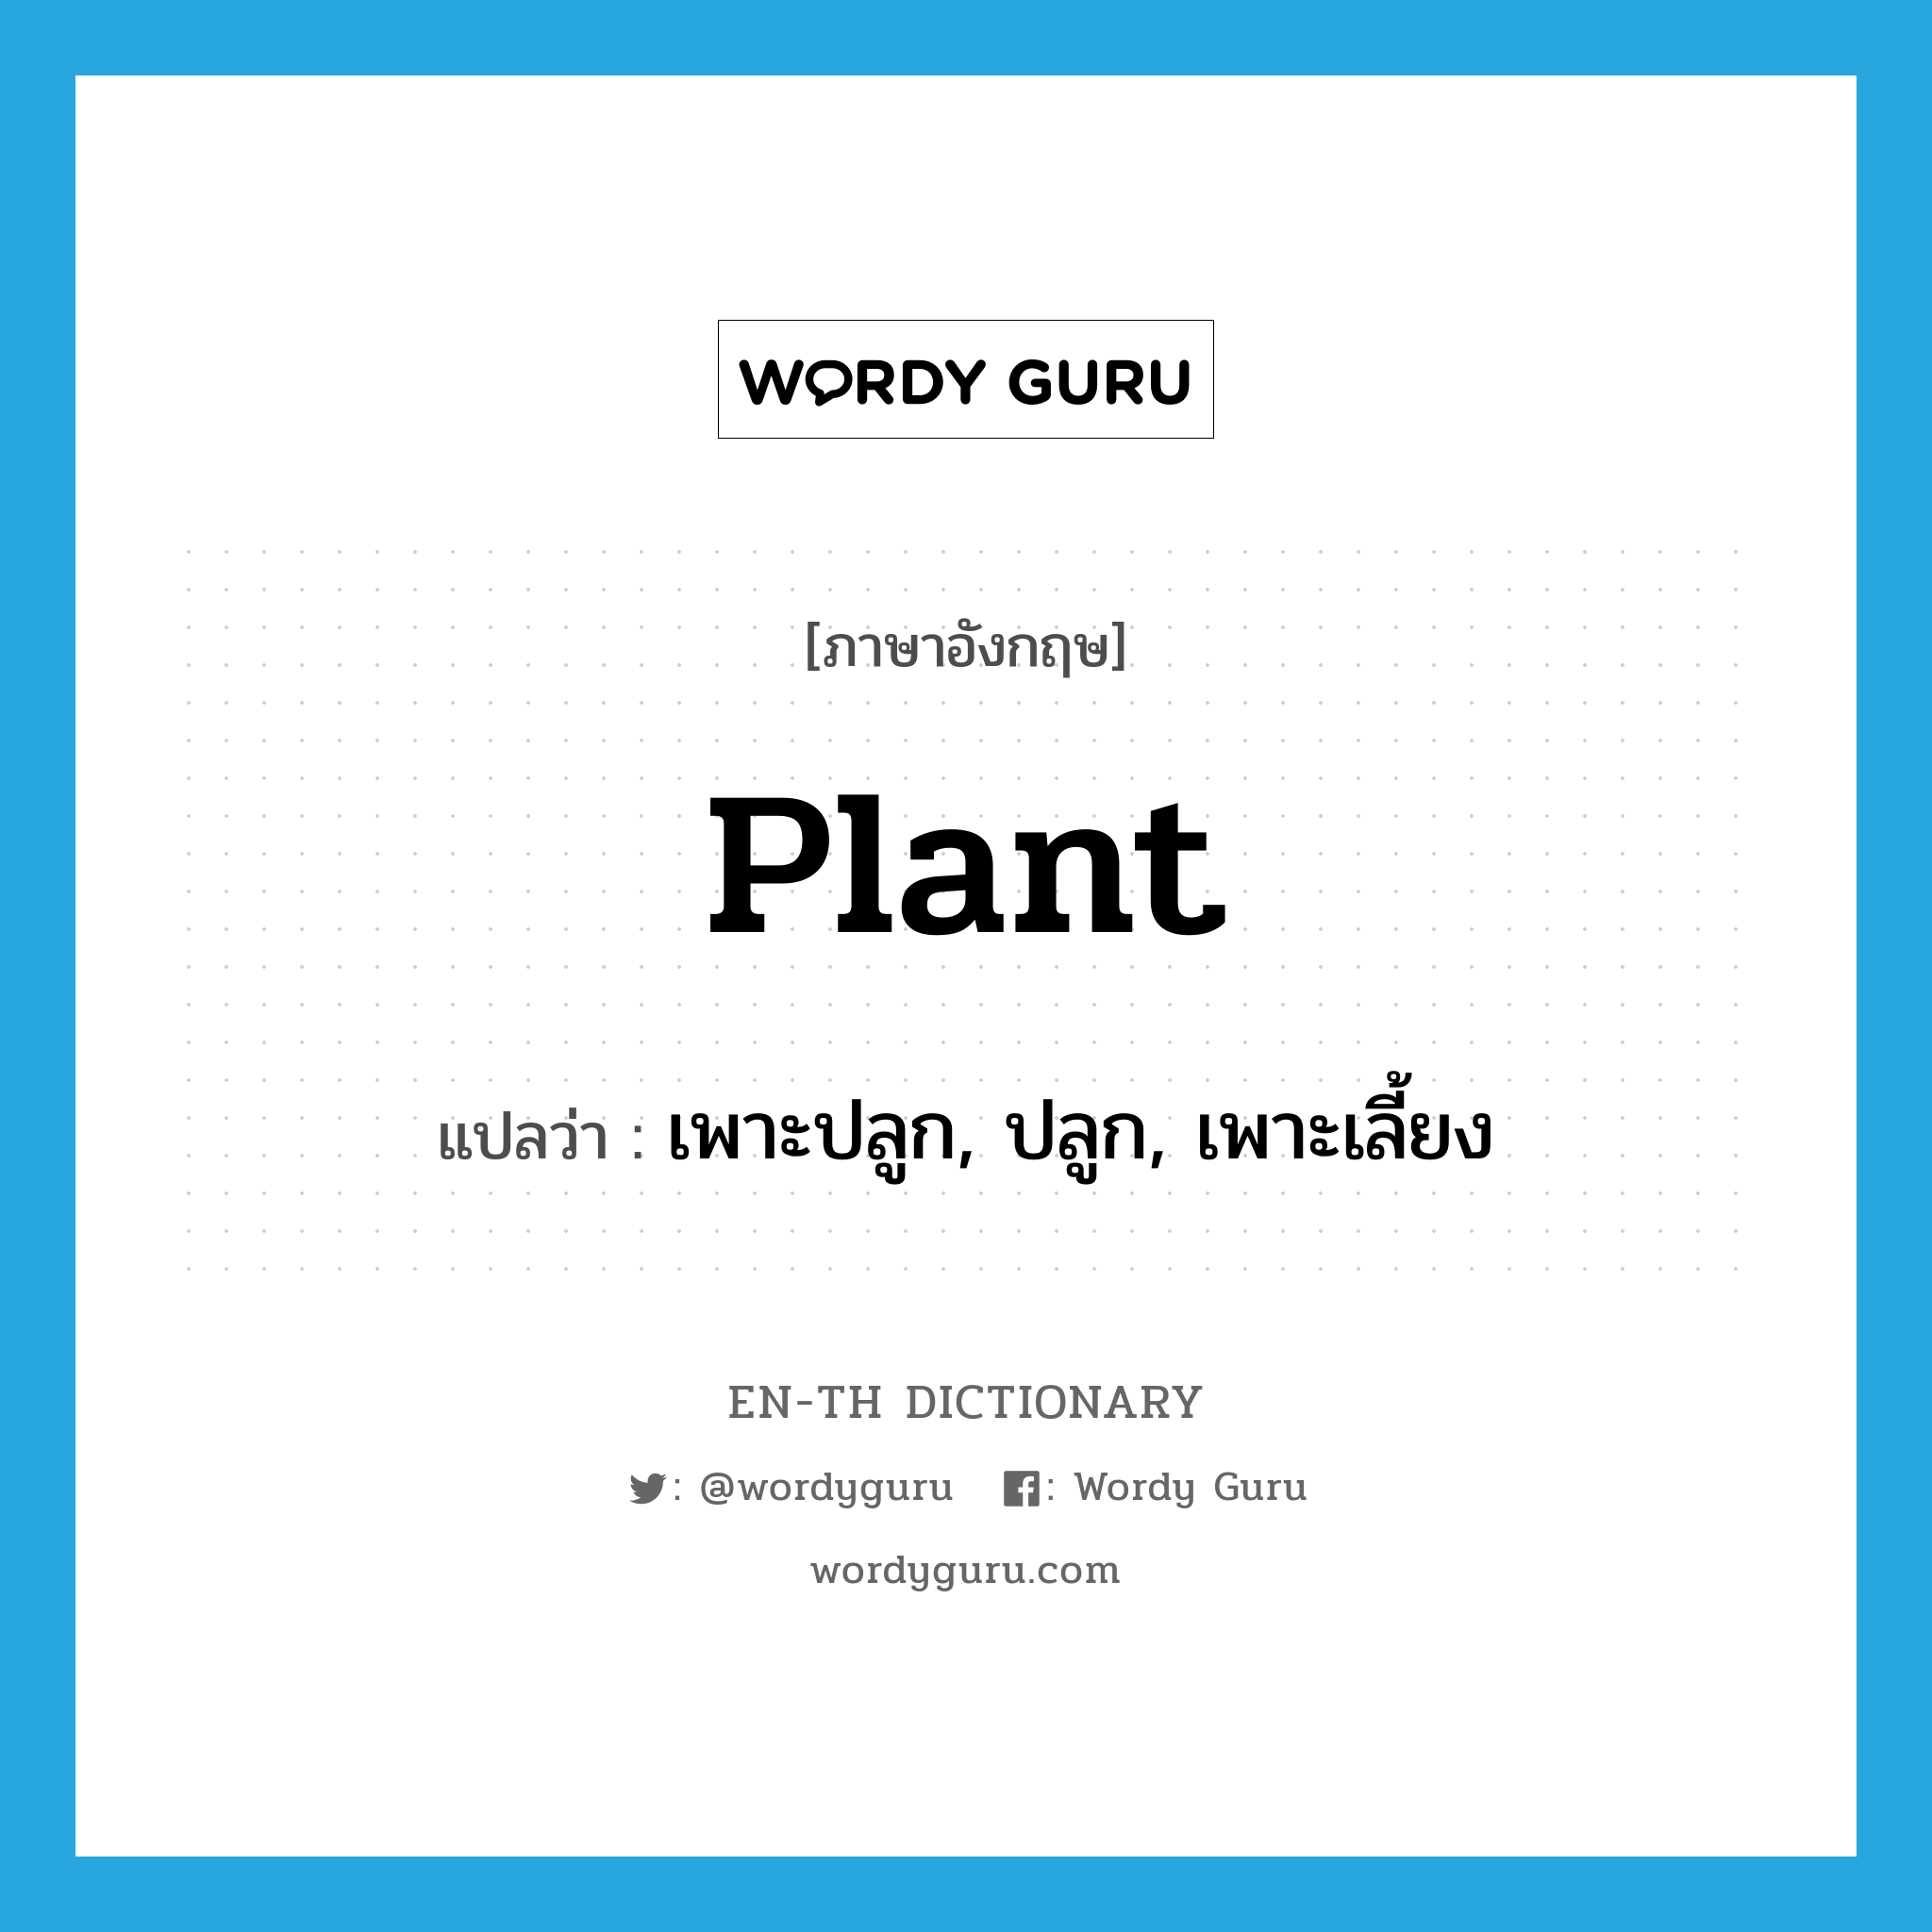 เพาะปลูก, ปลูก, เพาะเลี้ยง ภาษาอังกฤษ?, คำศัพท์ภาษาอังกฤษ เพาะปลูก, ปลูก, เพาะเลี้ยง แปลว่า plant ประเภท VT หมวด VT